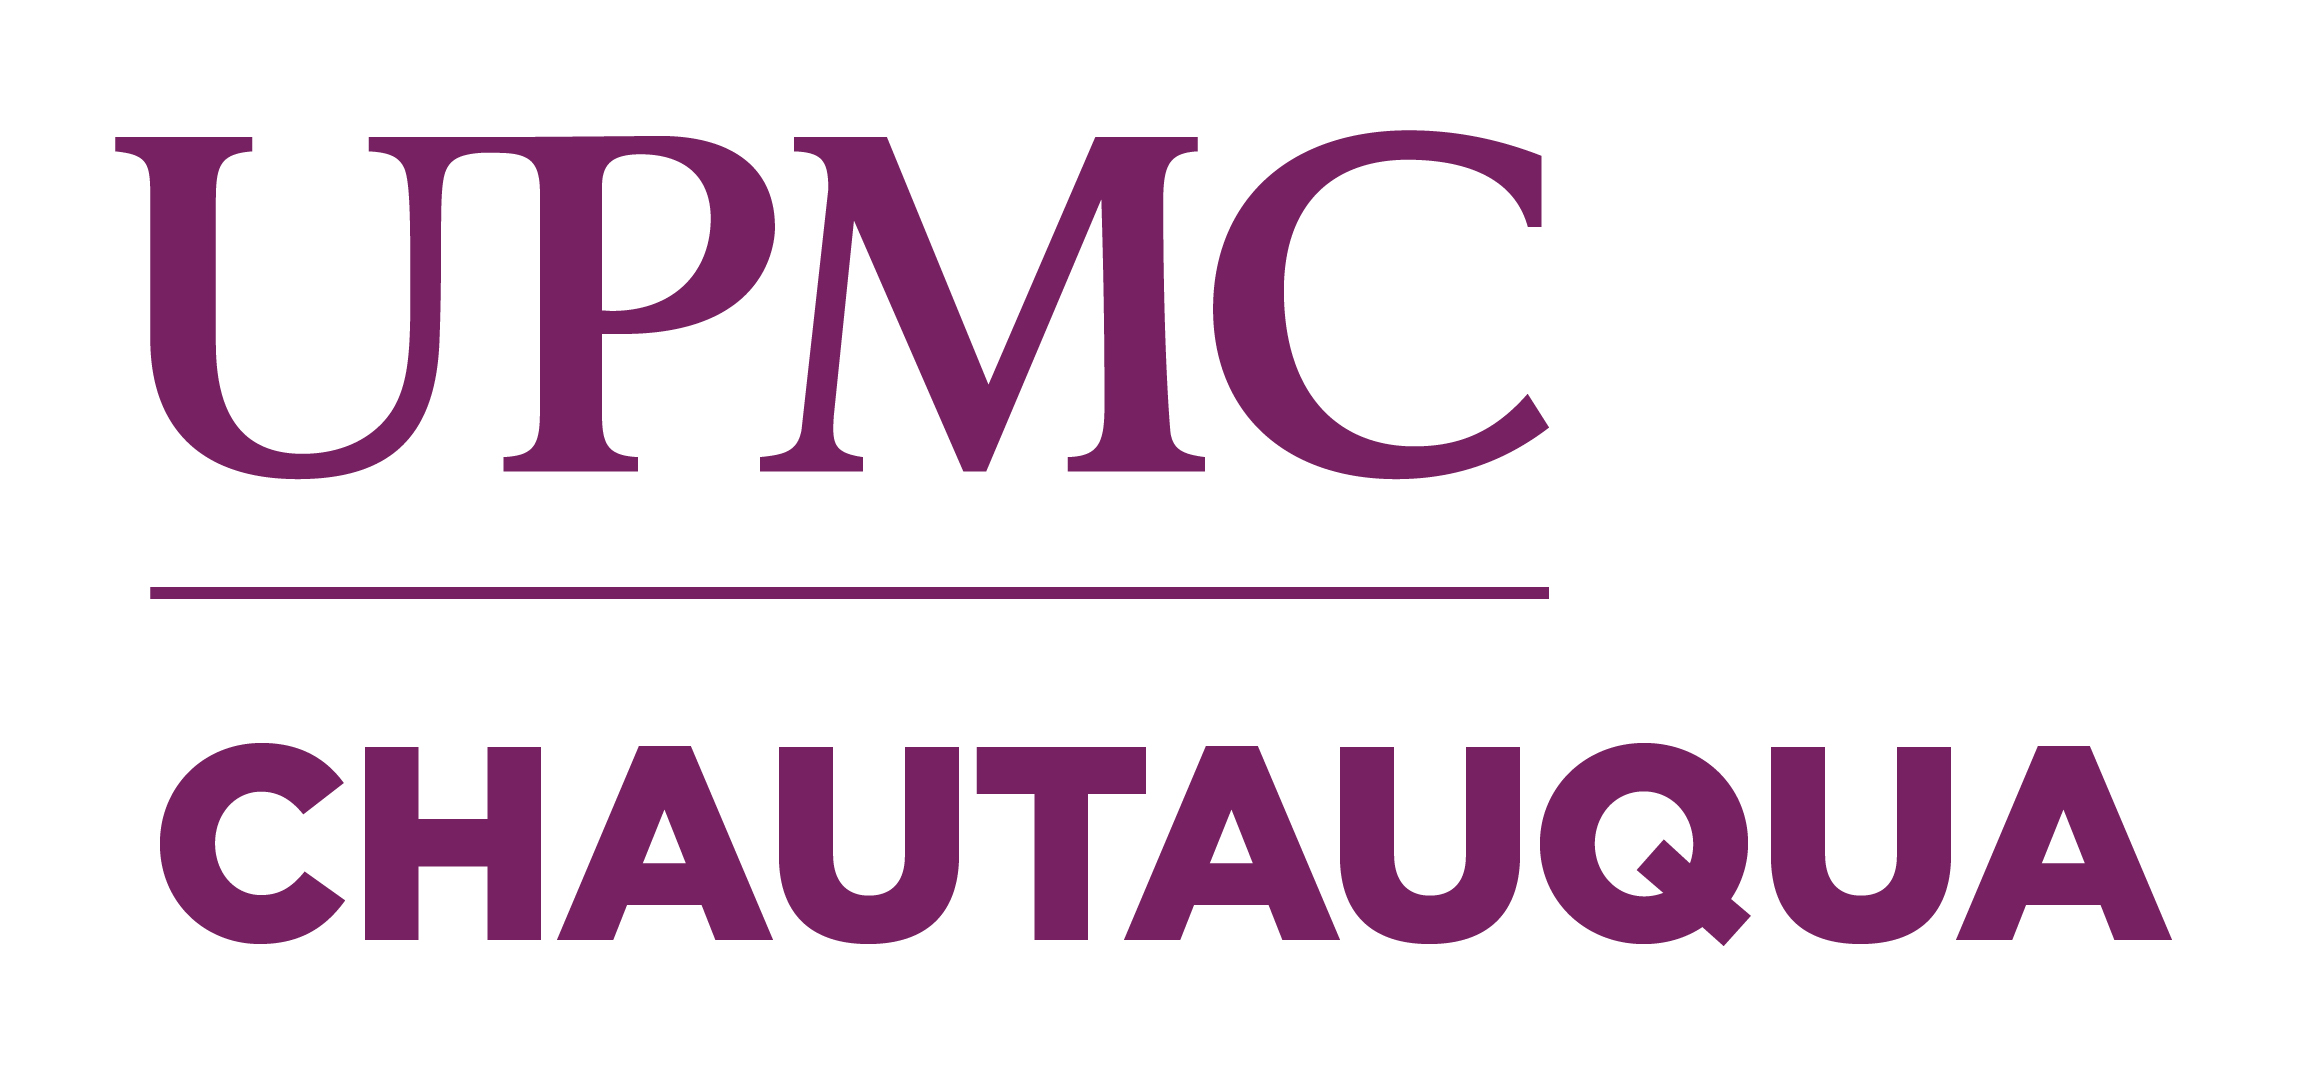 UPMC logo